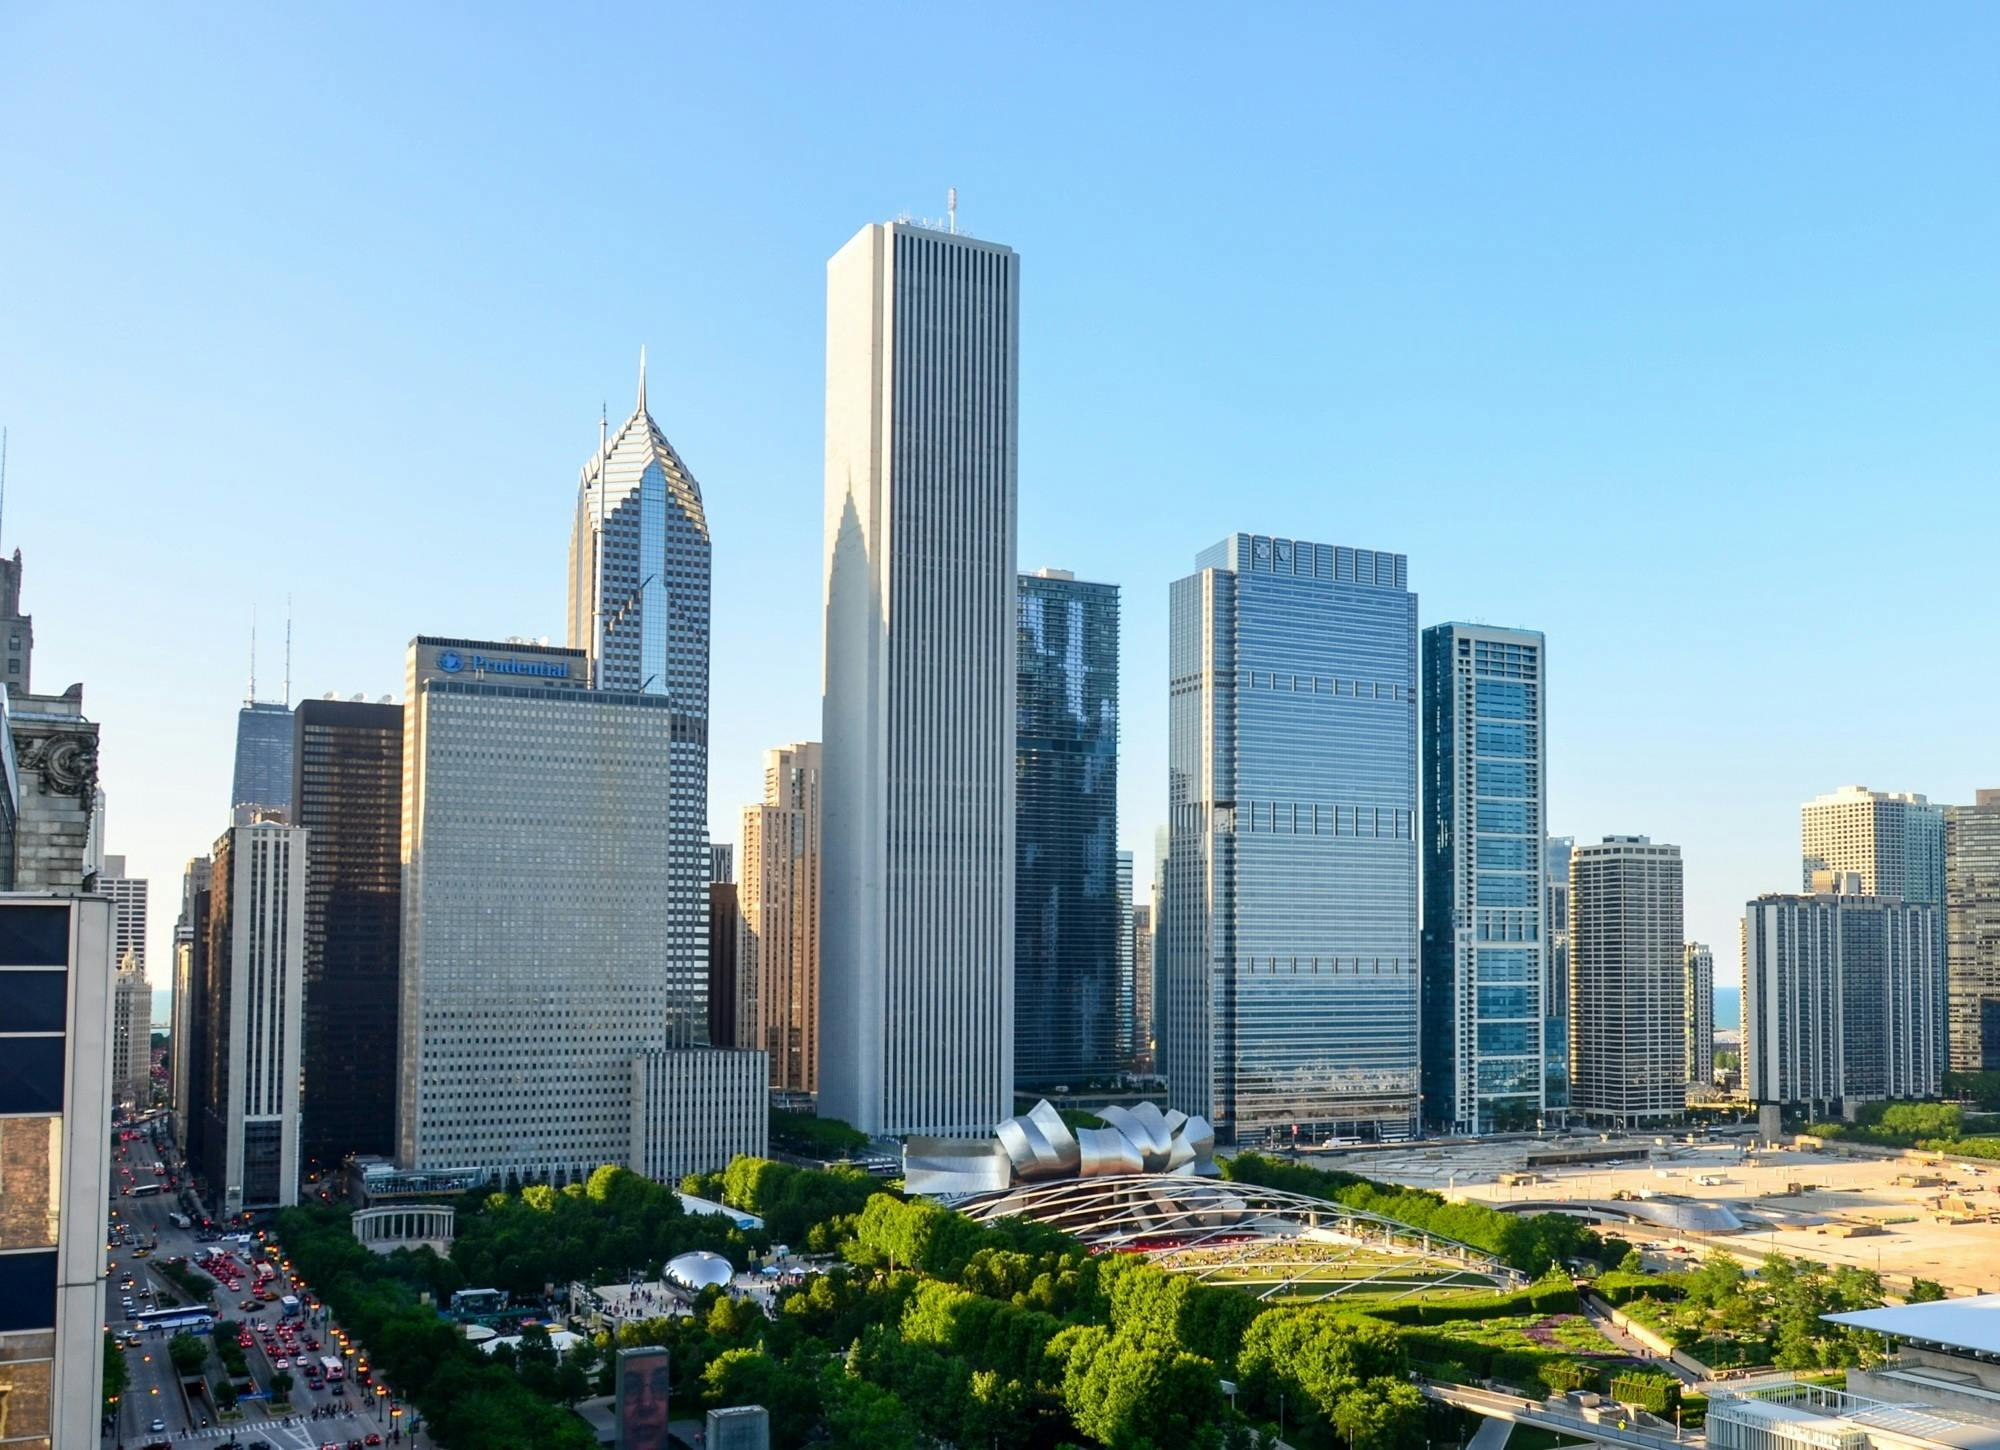 Excursão a pé guiada pela arquitetura moderna do meio do século em Chicago